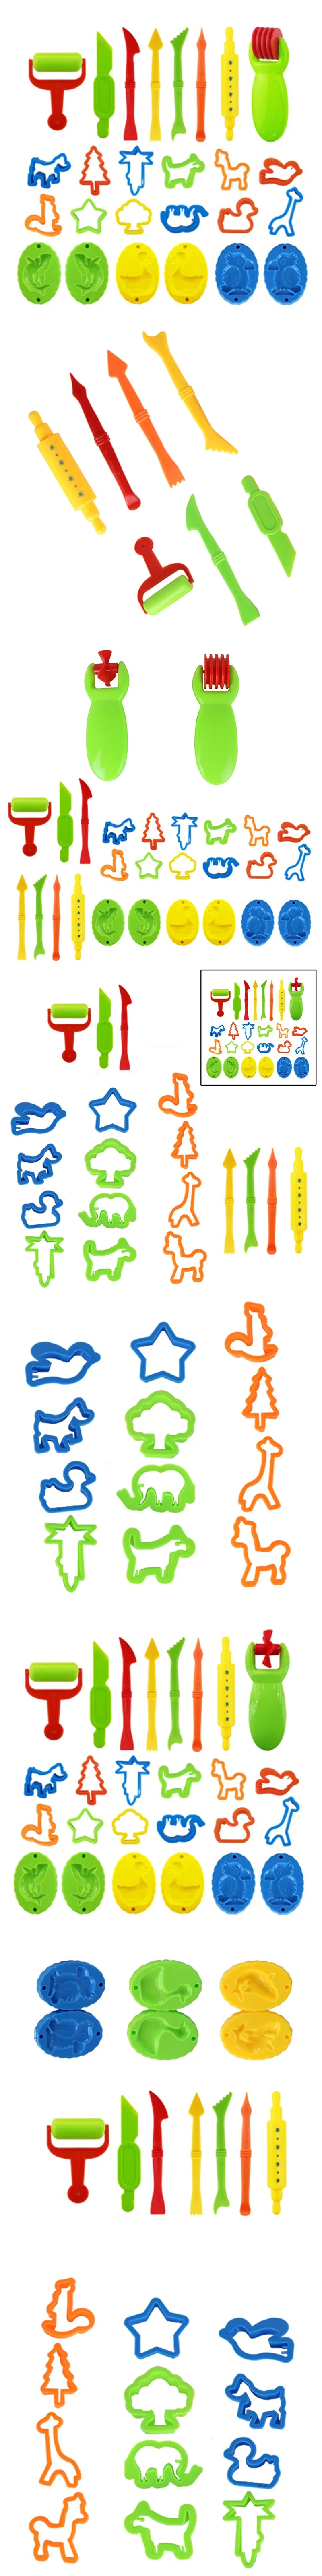 26 шт. набор инструментов для теста для лепки набор глиняных игровых форм режущие поделки Детский Рождественский подарок Play Doh Инструменты Набор инструментов для теста для лепки детский глиняный набор